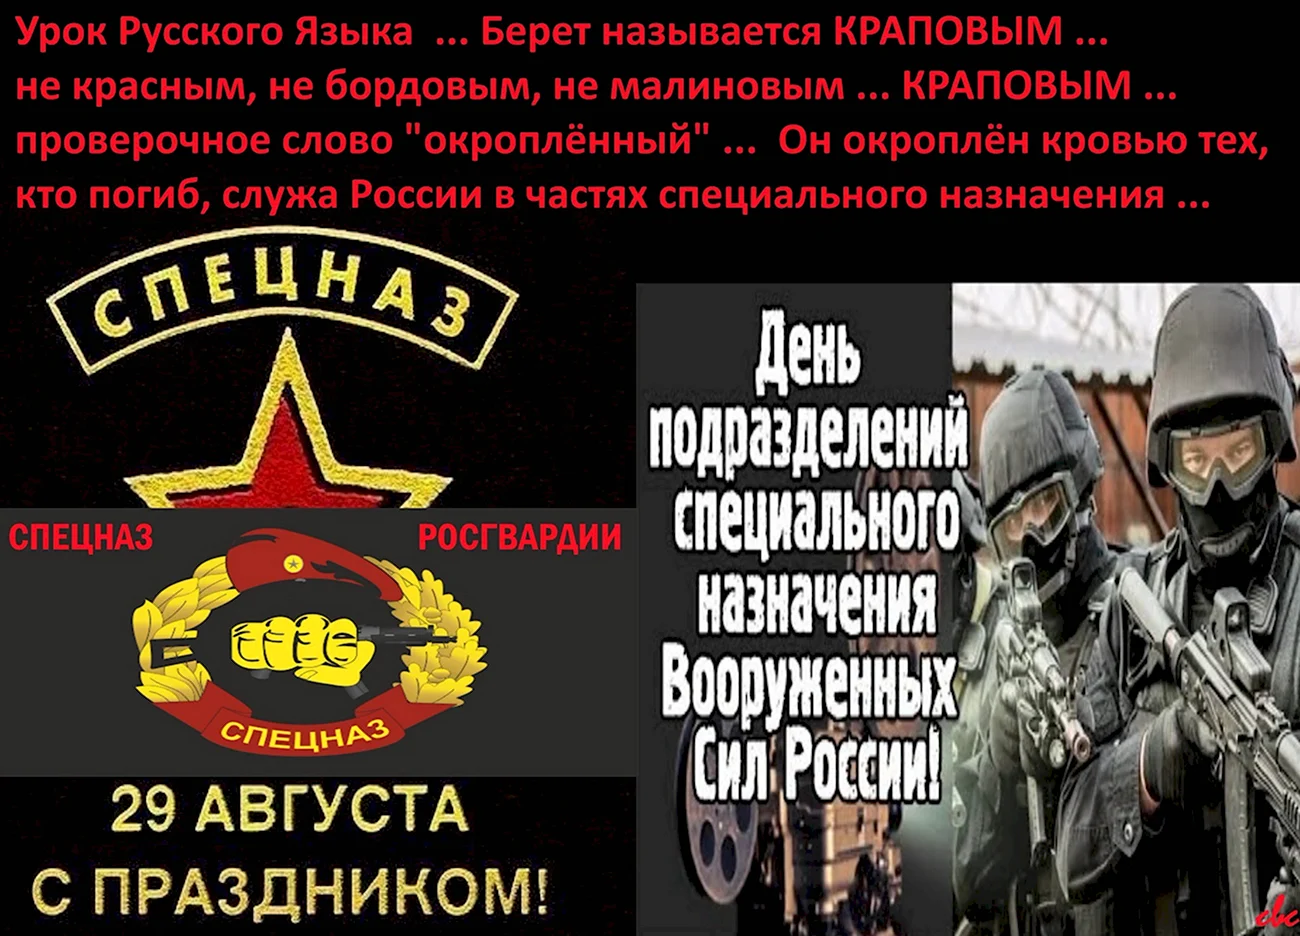 29 Августа праздник спецназа ВВ МВД РФ внутренние войска. Поздравление